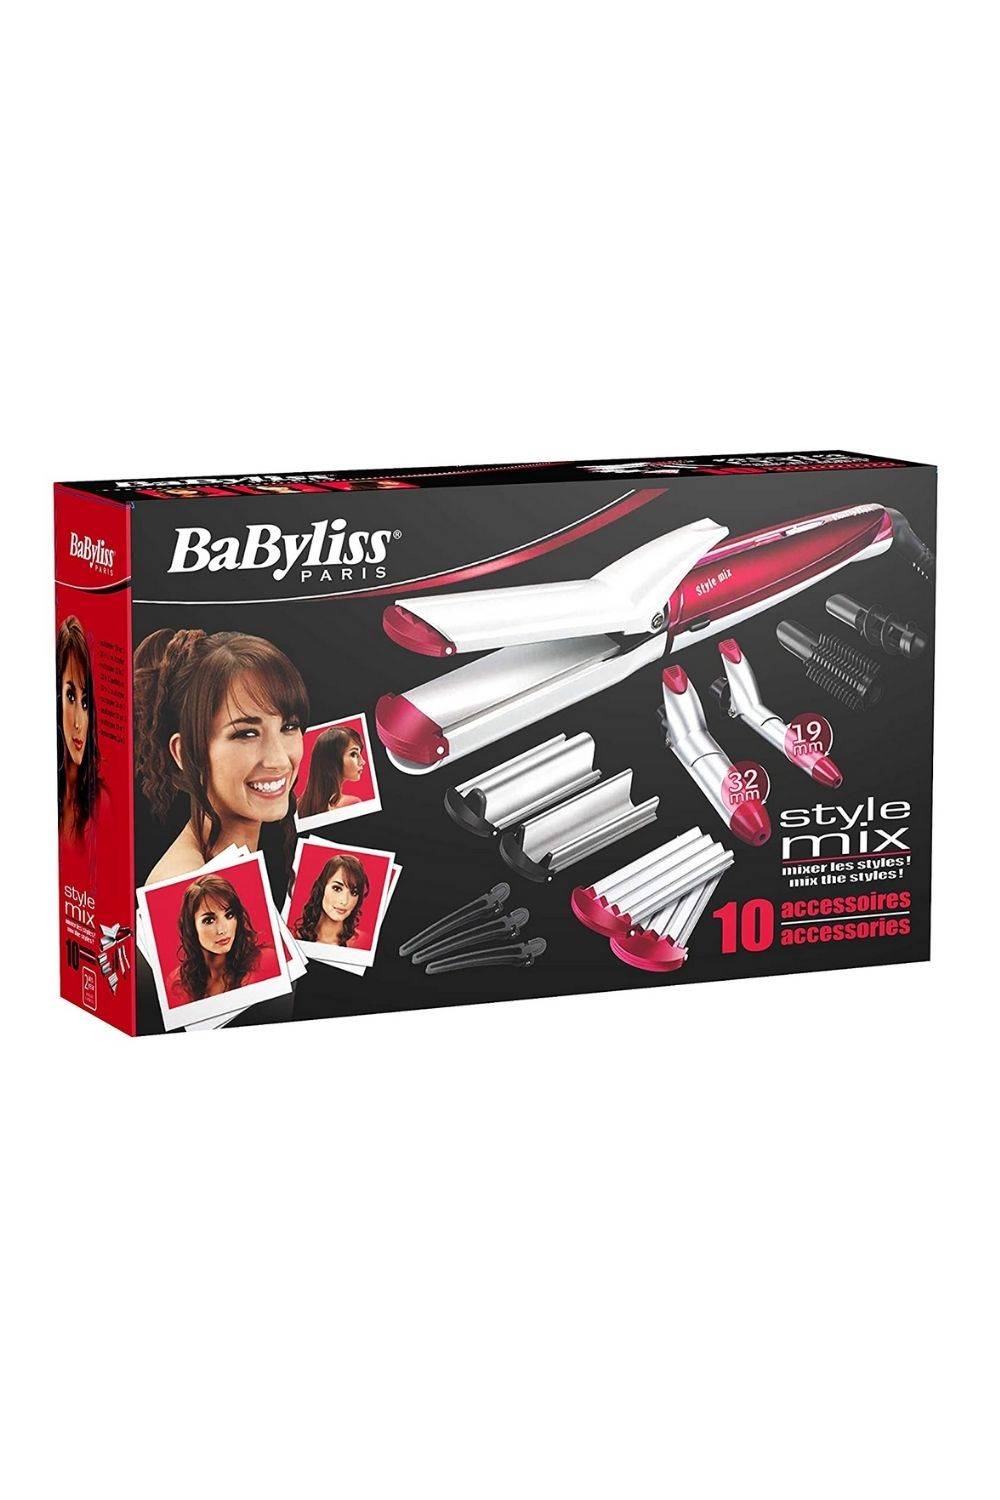 BaByliss MS22E Multistyle - set moldeador de pelo 10 en 1 para hacer todo tipo de peinados, alisar, ondular, moldear, crimpar, ondas al agua, rizos marcados, ondas abiertas con recubrimiento cerámico